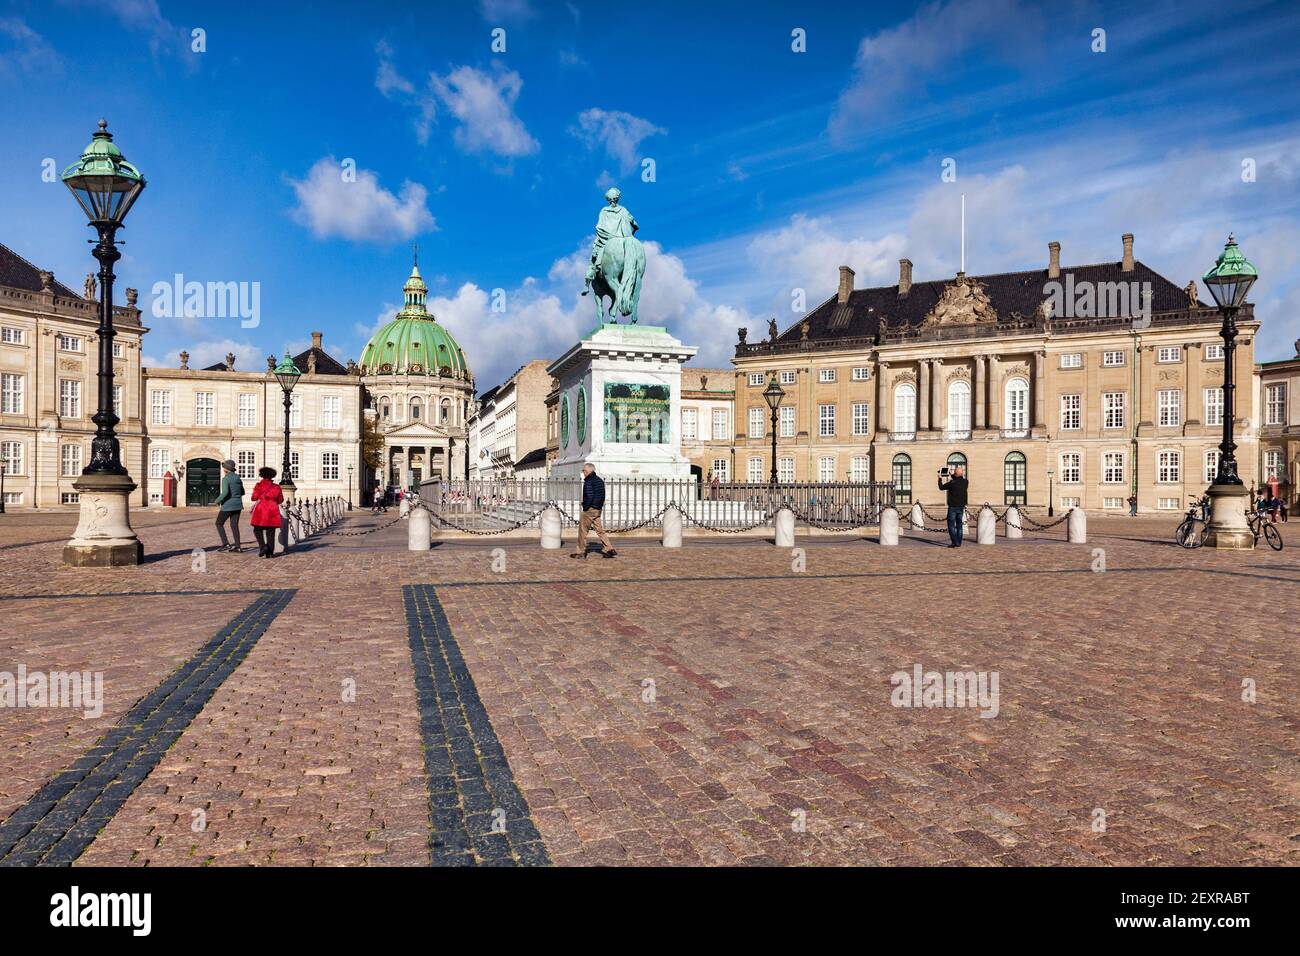 23 September 2018:Kopenhagen, Dänemark - Touristen Sightseeing in Amalienborg Platz, mit dem Königspalast, die Reiterstatue von Frederik V., und Th Stockfoto